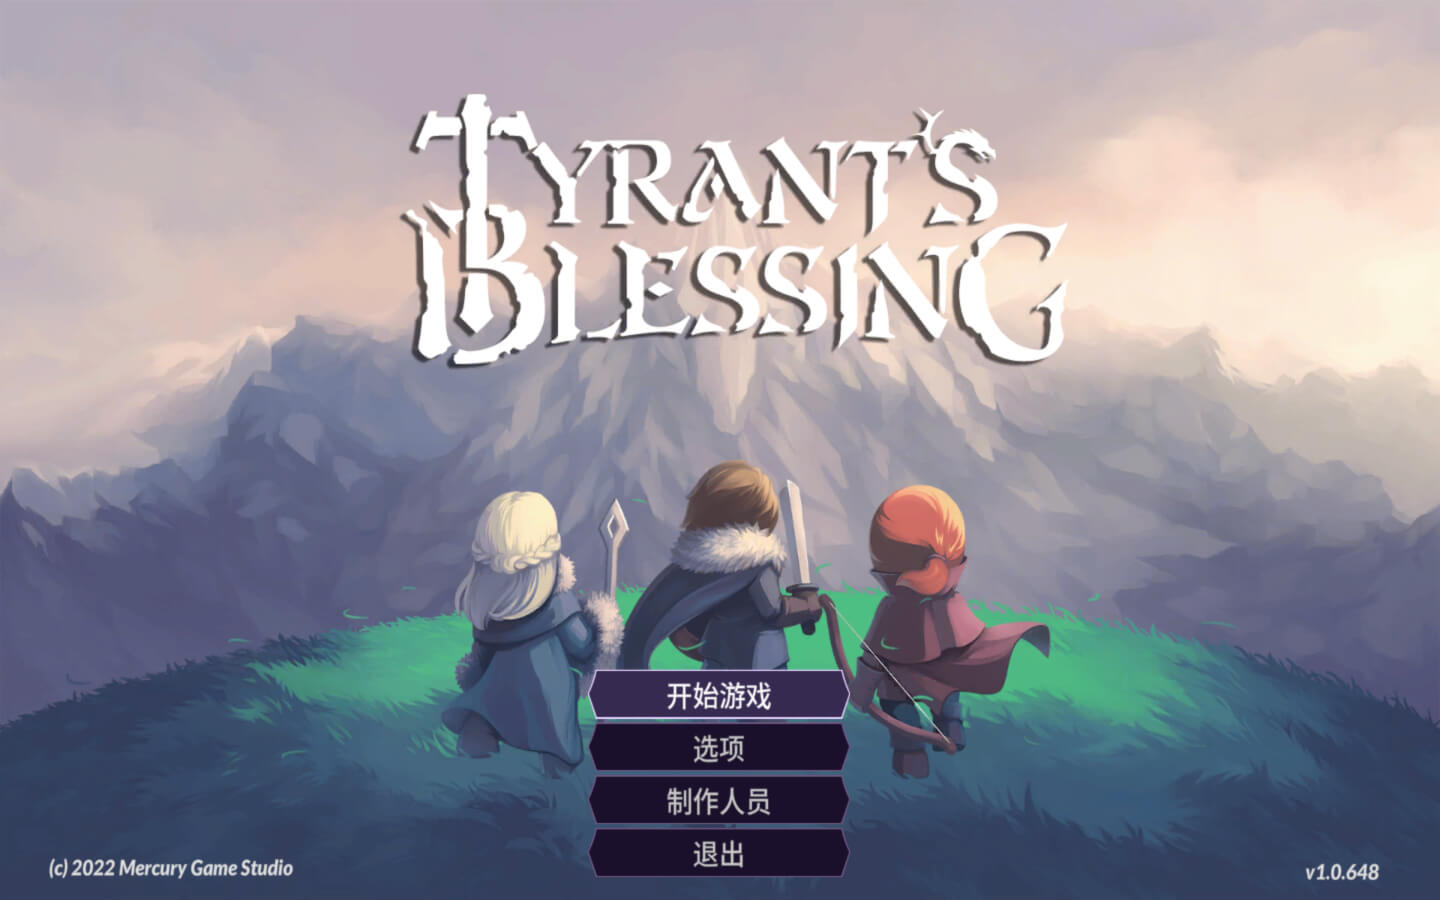 暴君的祝福 for Mac v1.0.648 Tyrant’s Blessing 中文原生版 苹果电脑